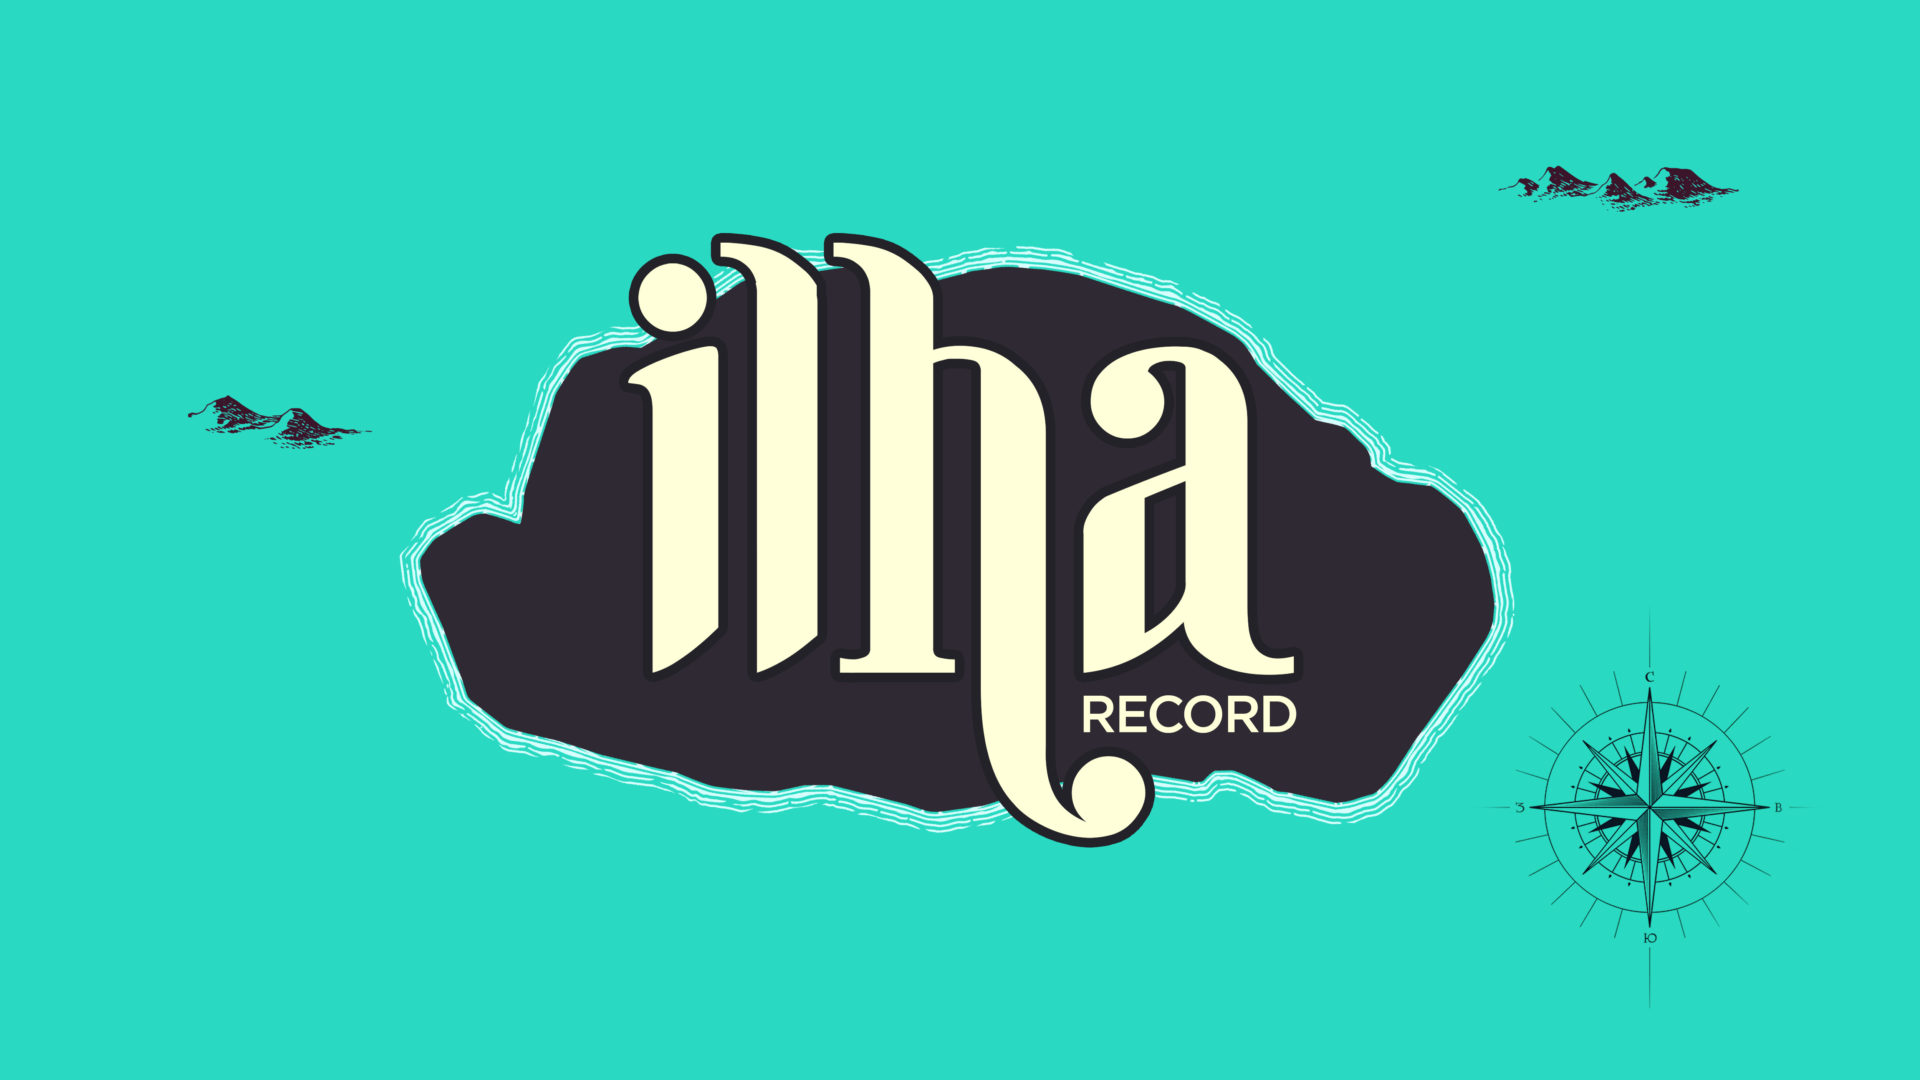 Logotipo do reality show Ilha Record, da Record TV